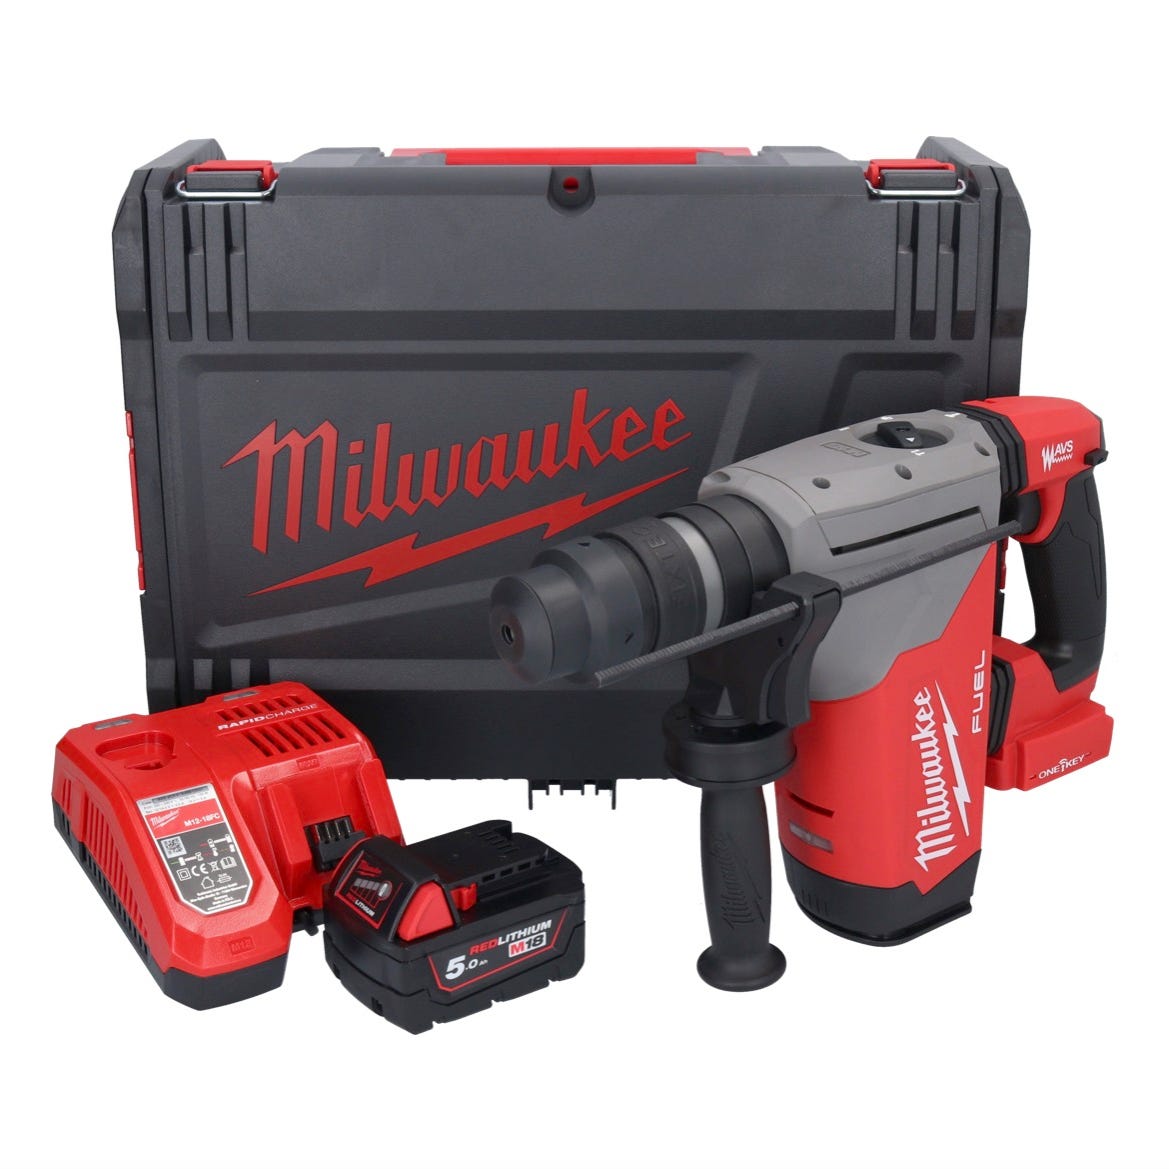 Milwaukee M18 ONEFHPX-501X Perfo-burineur sans fil 5,0 J 18V Brushless + 1x Battérie 5,0 Ah + Chargeur rapide + Coffret HD Box 0